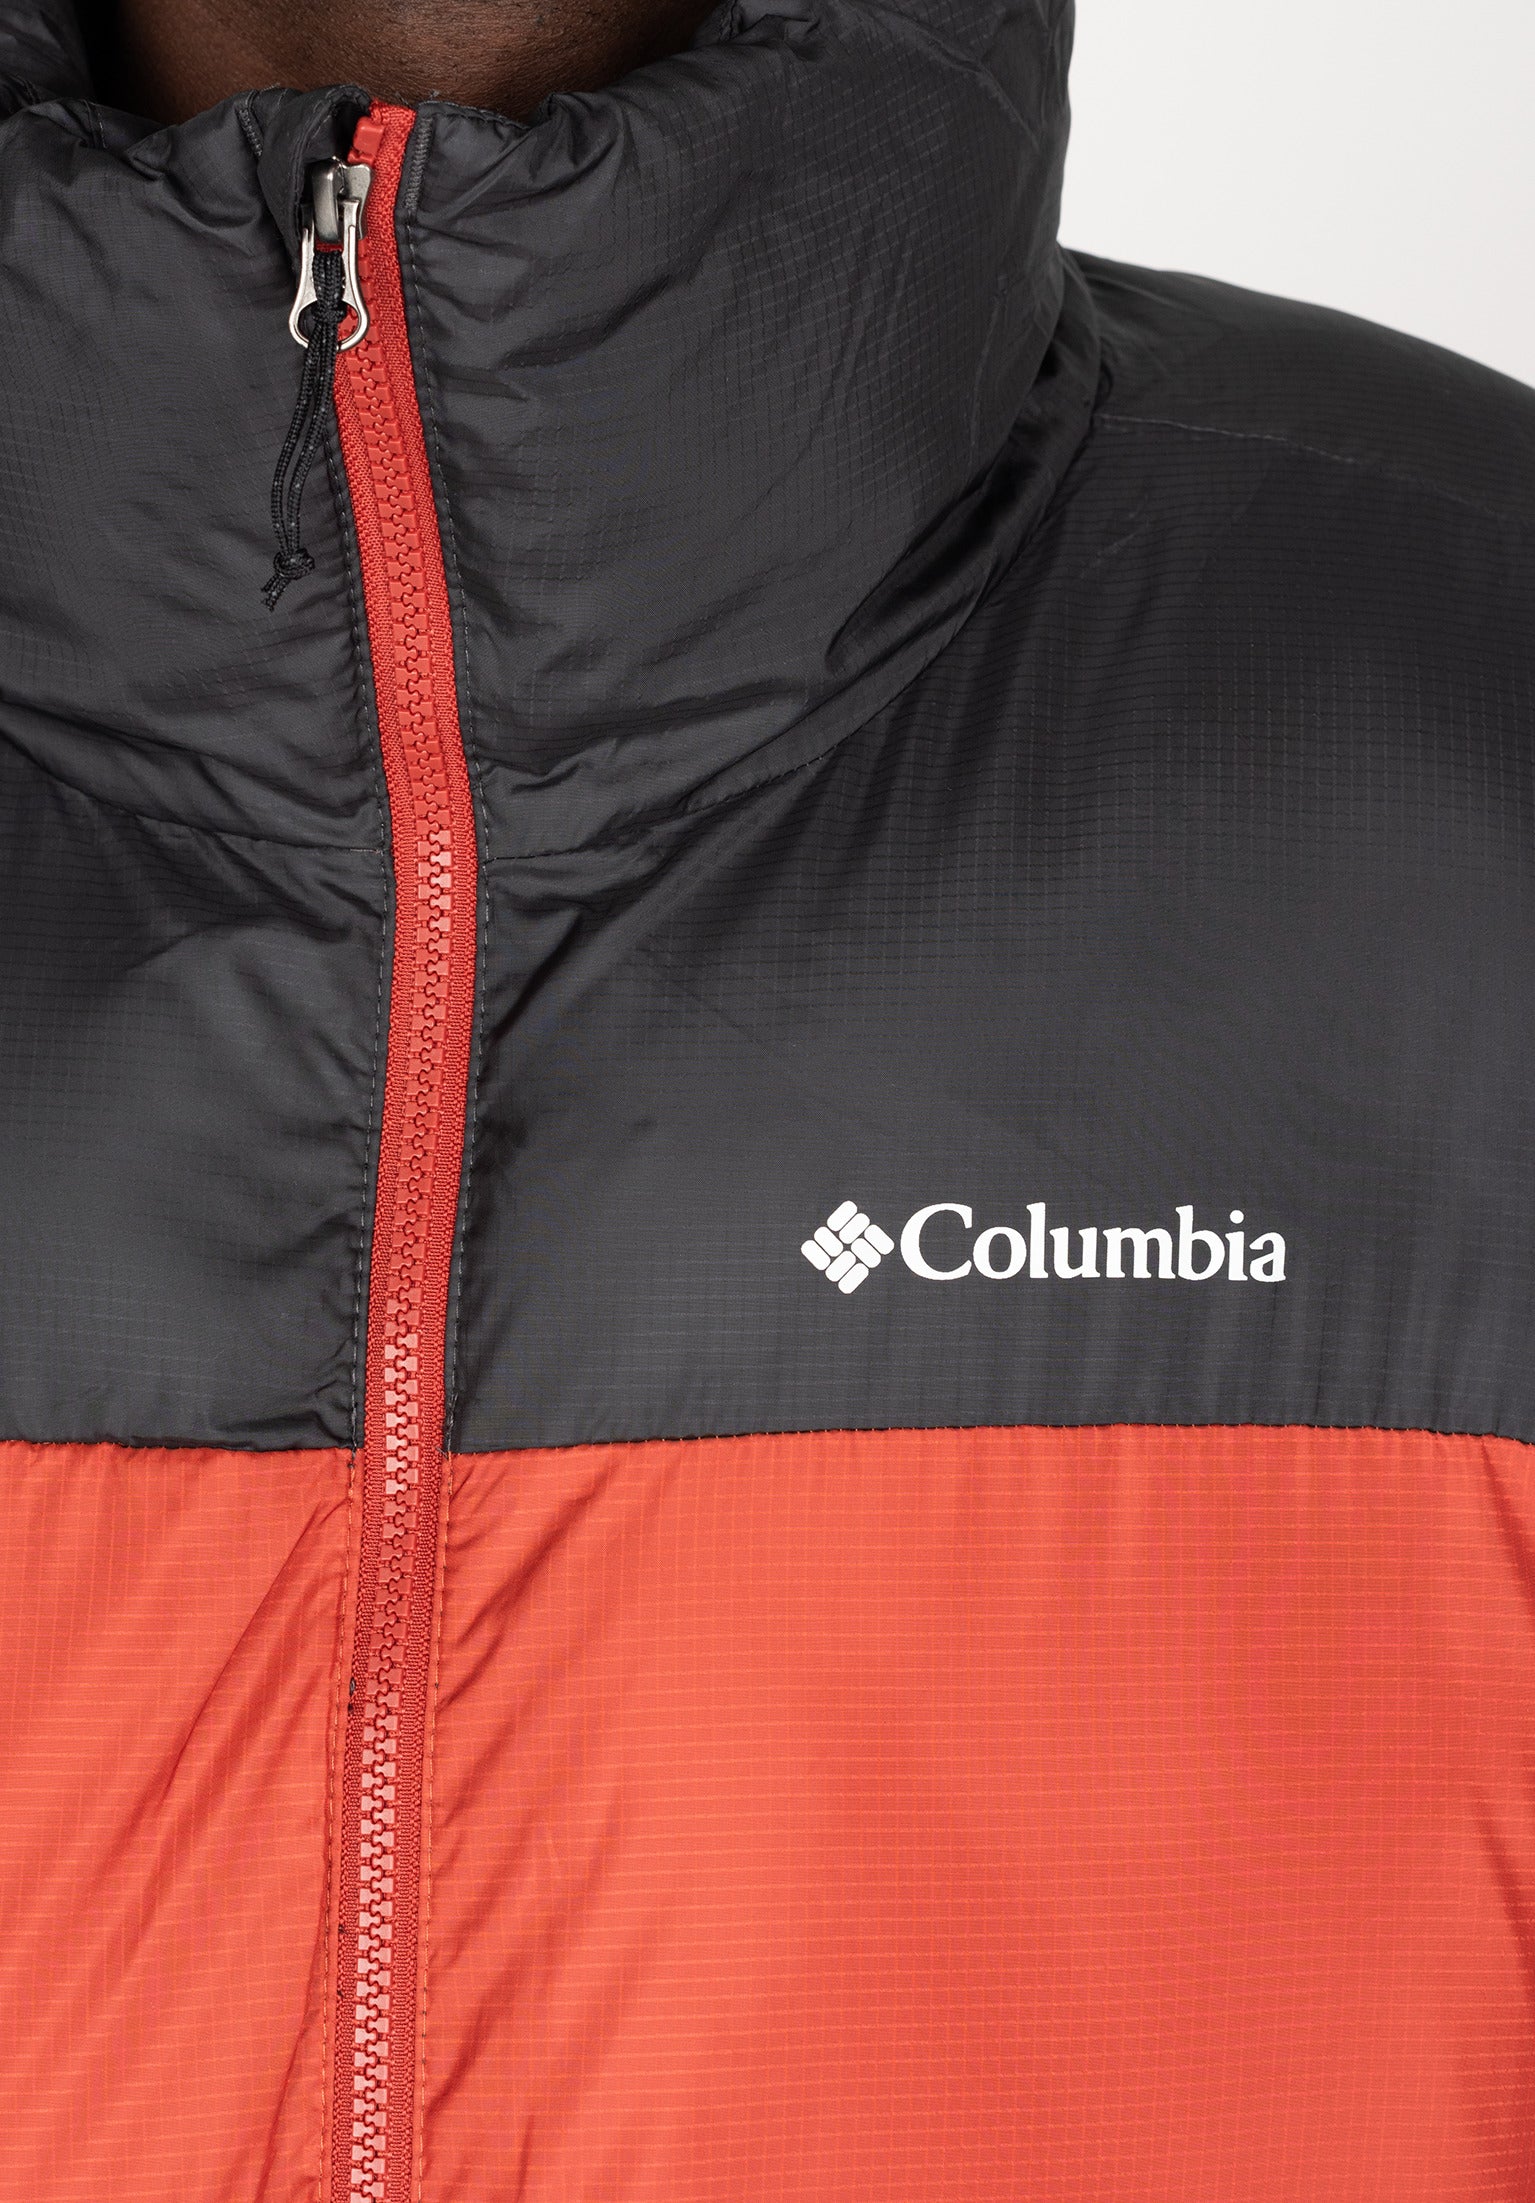 Columbia Cloverdale Interchange Jacket - Men's - Als.com